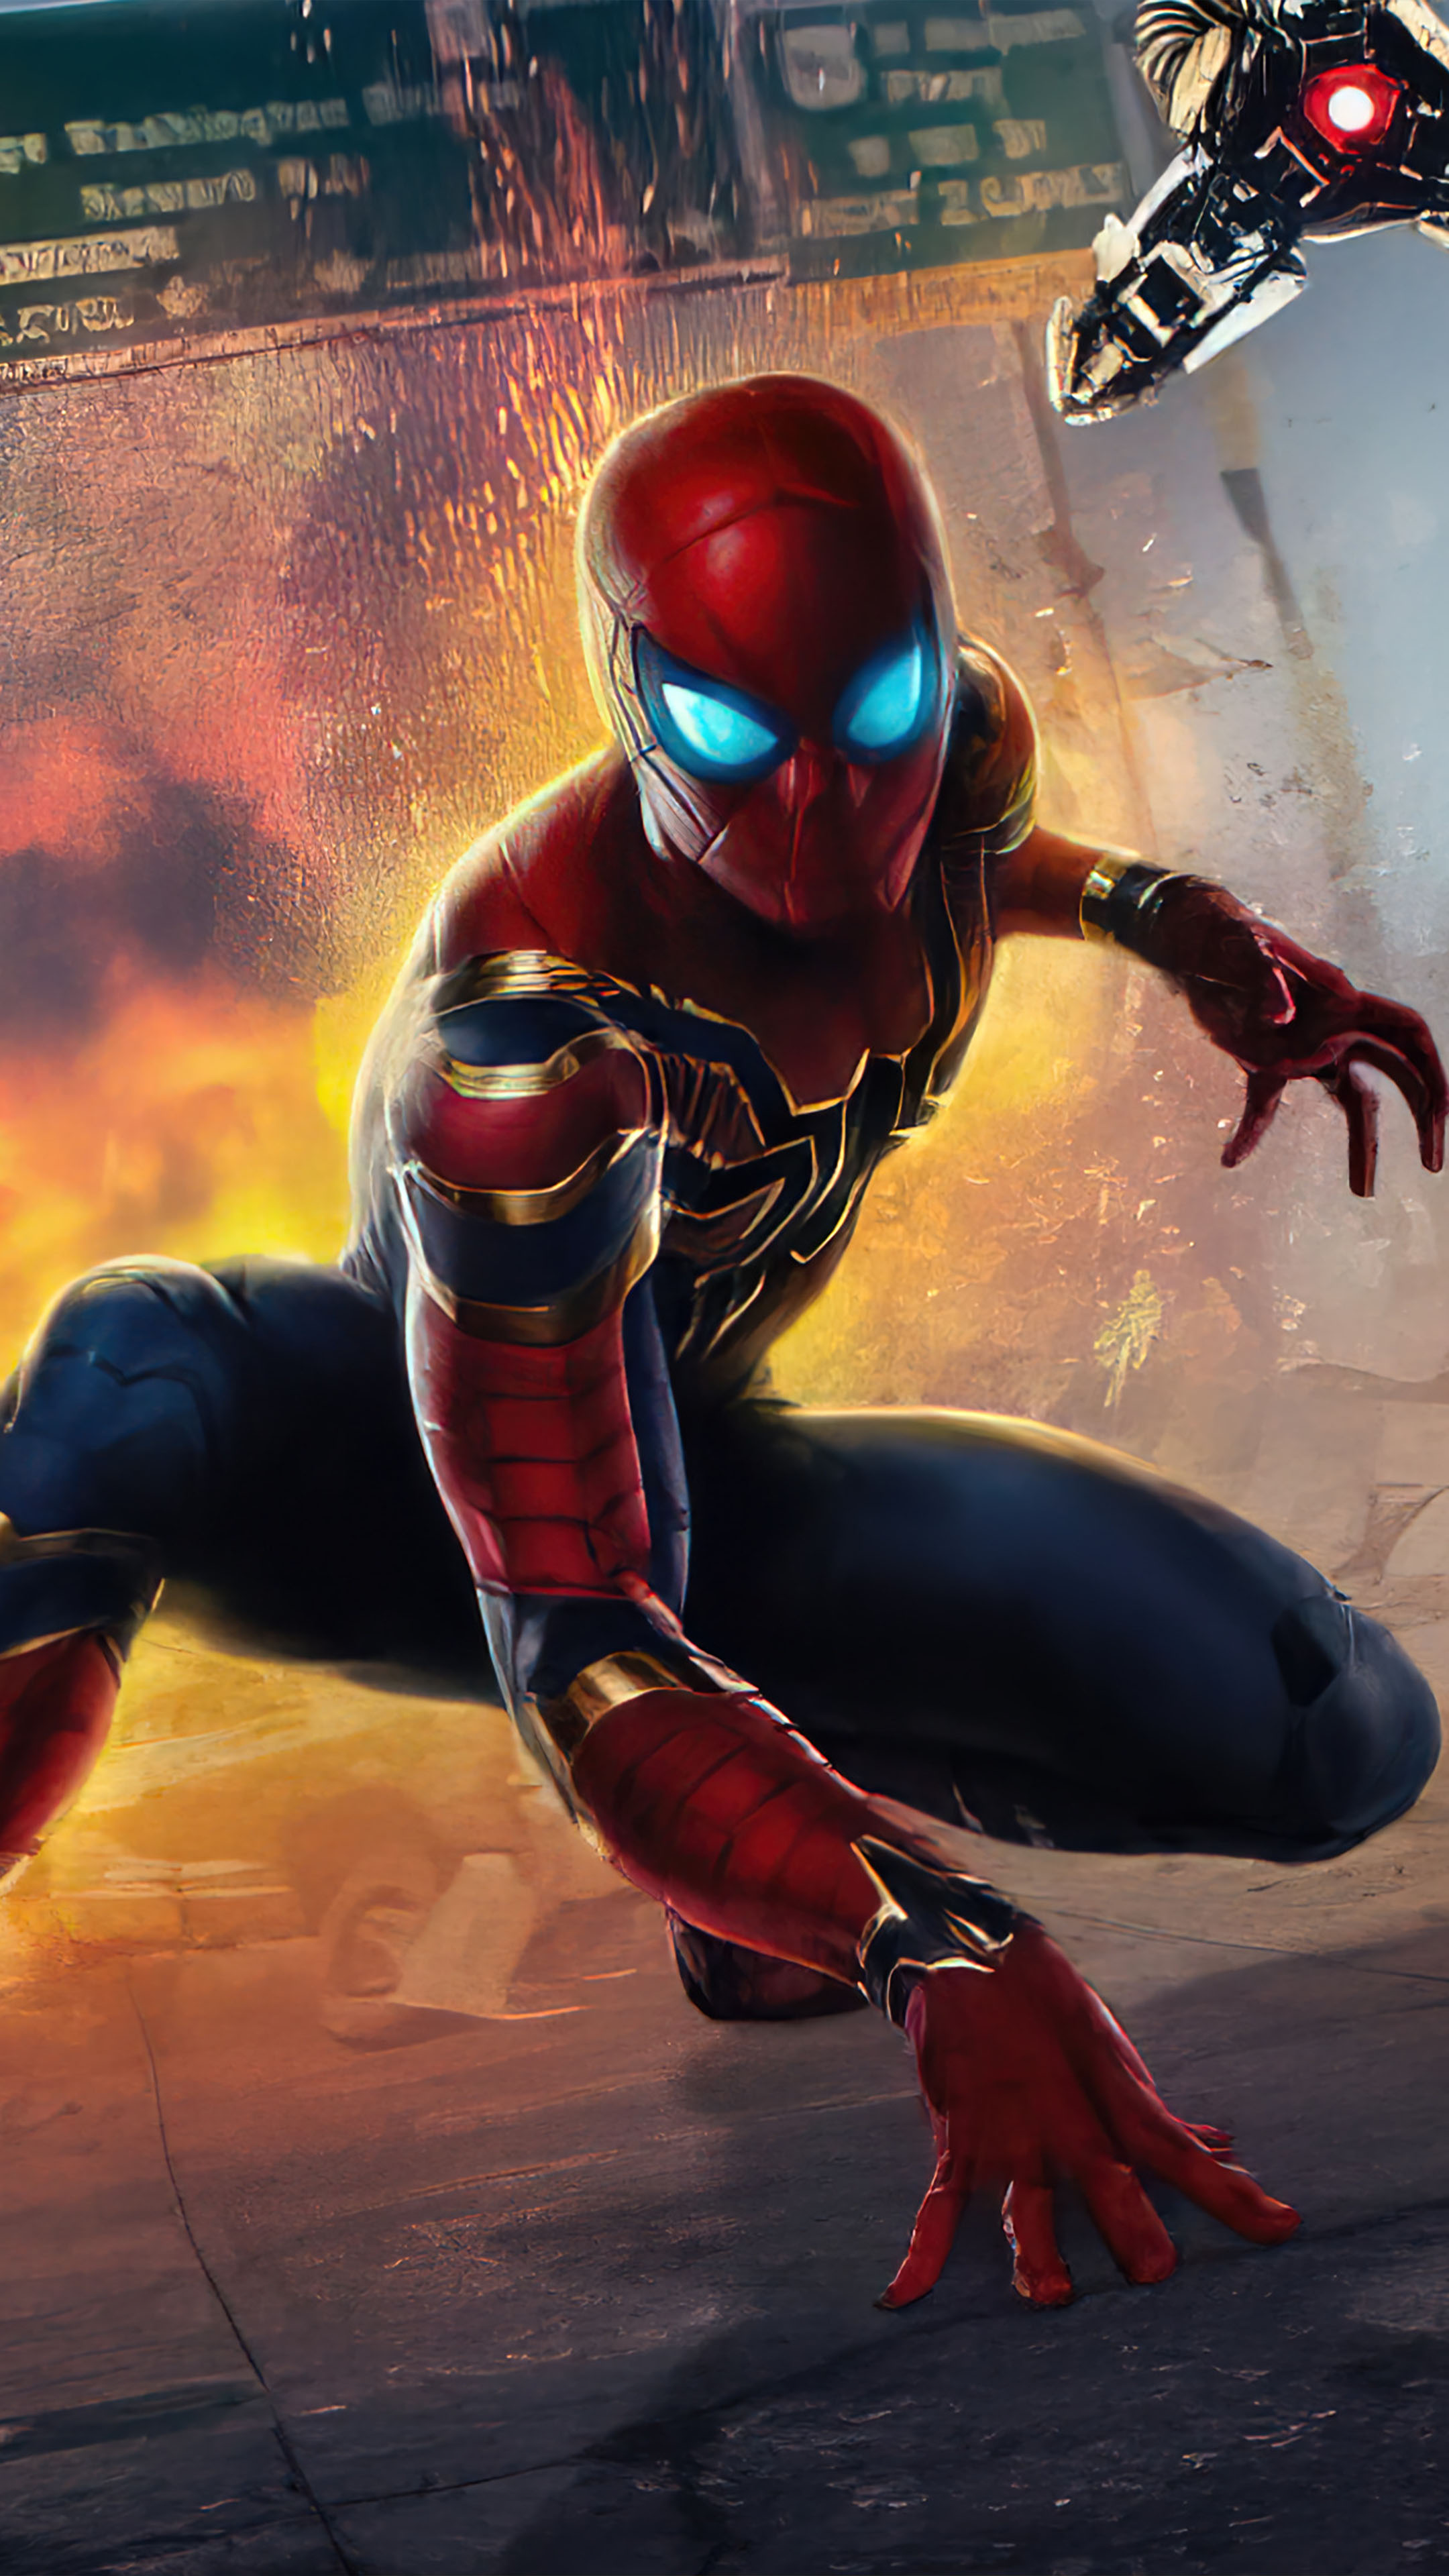 Spider-Man Ps5 Marvel video game 8K wallpaper download